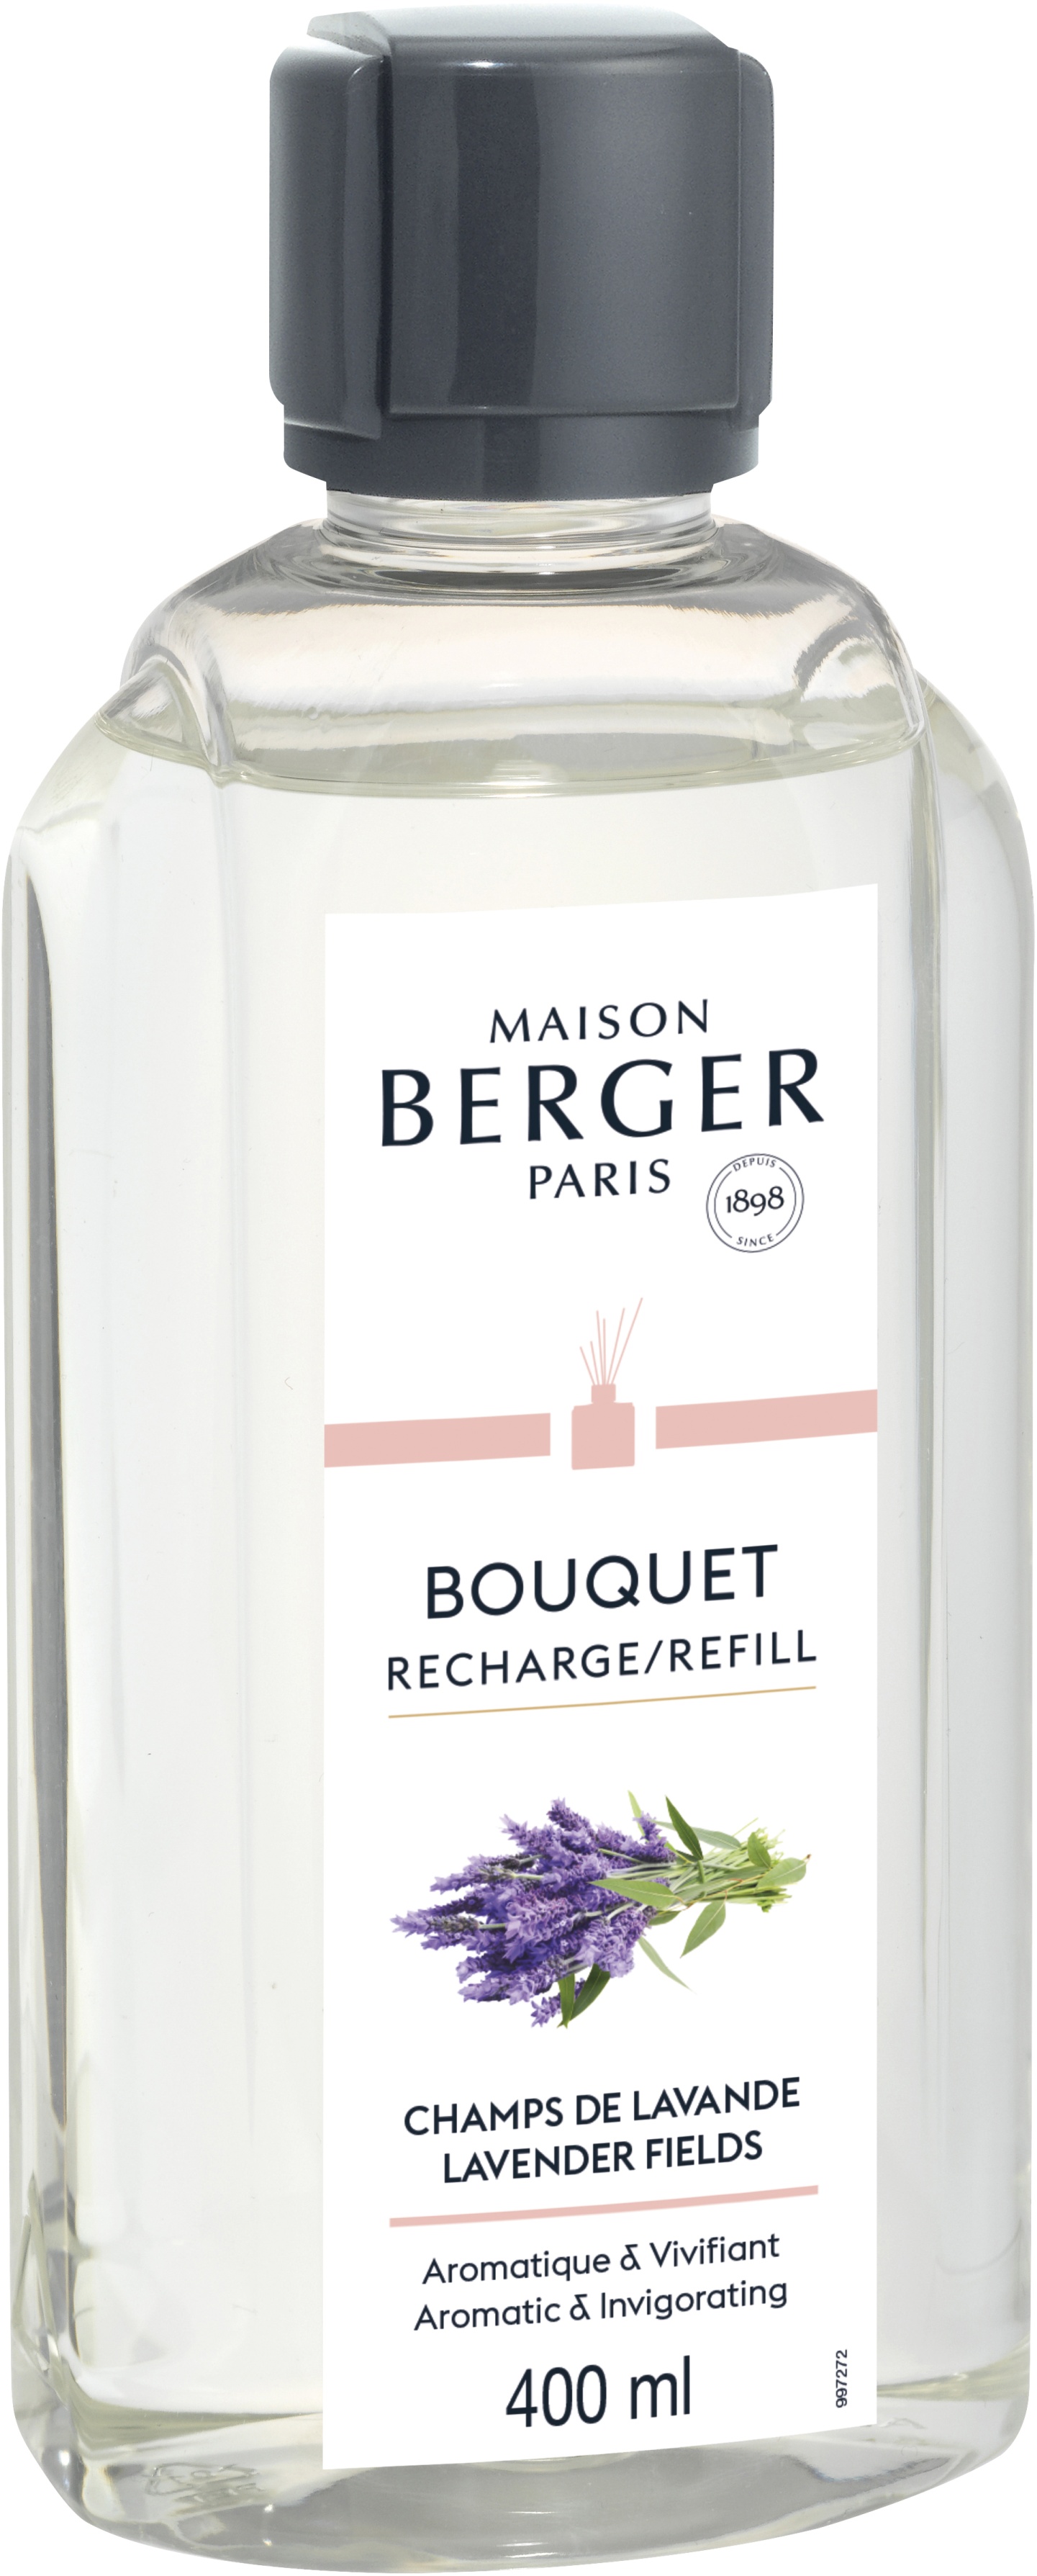 Parfum pentru difuzor Berger Bouquet Parfume Champs de Lavande 400ml Maison Berger pret redus imagine 2022